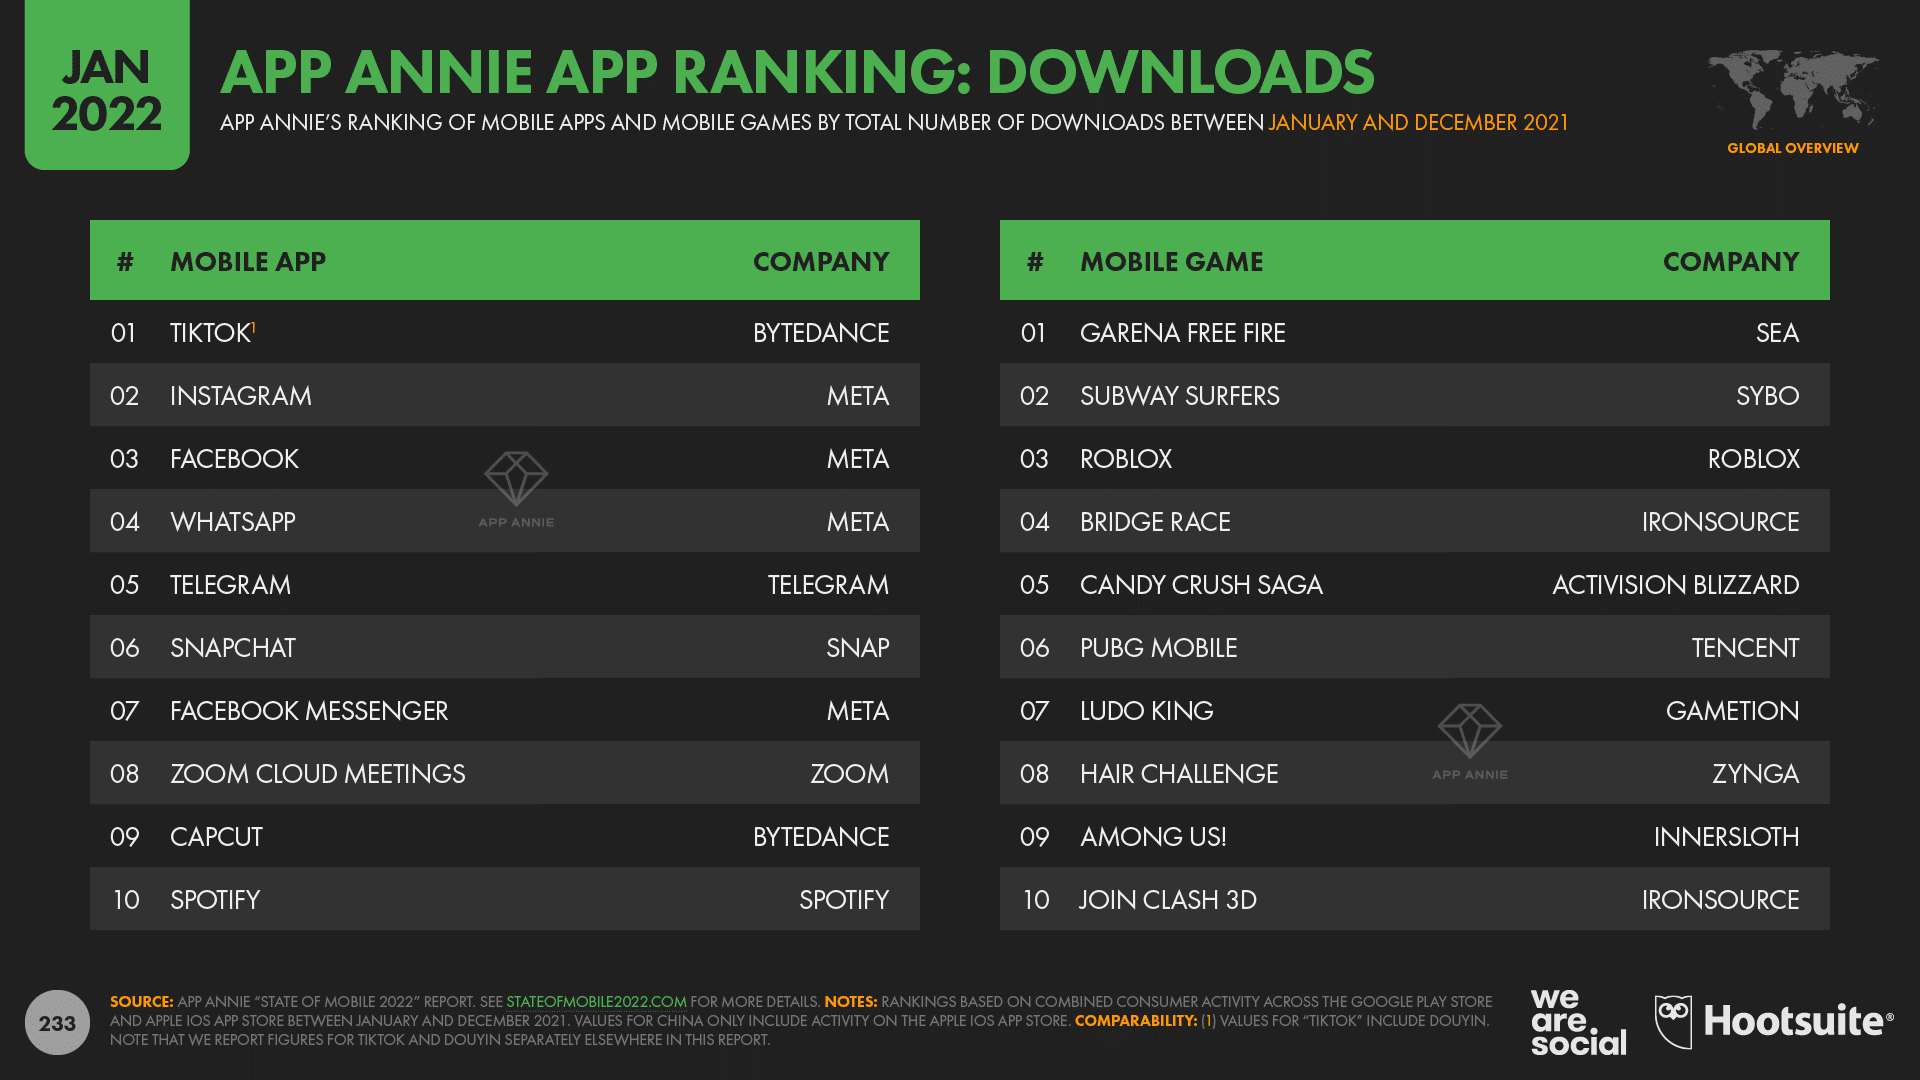 App annie app ranking: Downloads